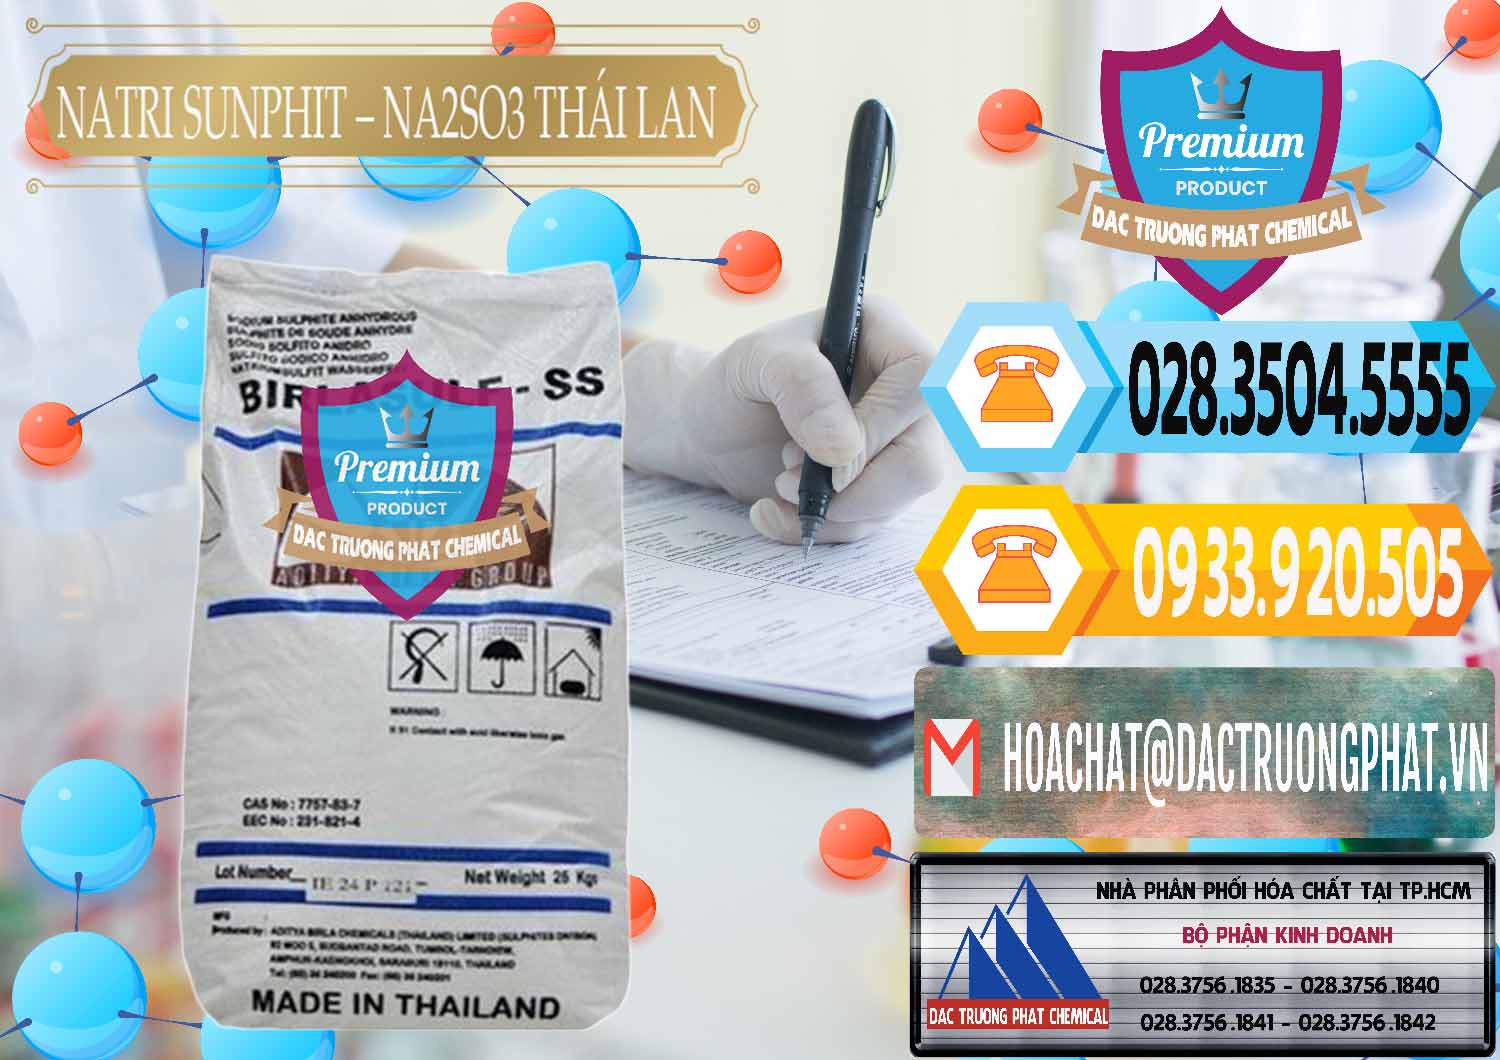 Chuyên phân phối và bán Natri Sunphit - NA2SO3 Thái Lan - 0105 - Cty chuyên nhập khẩu ( cung cấp ) hóa chất tại TP.HCM - hoachattayrua.net